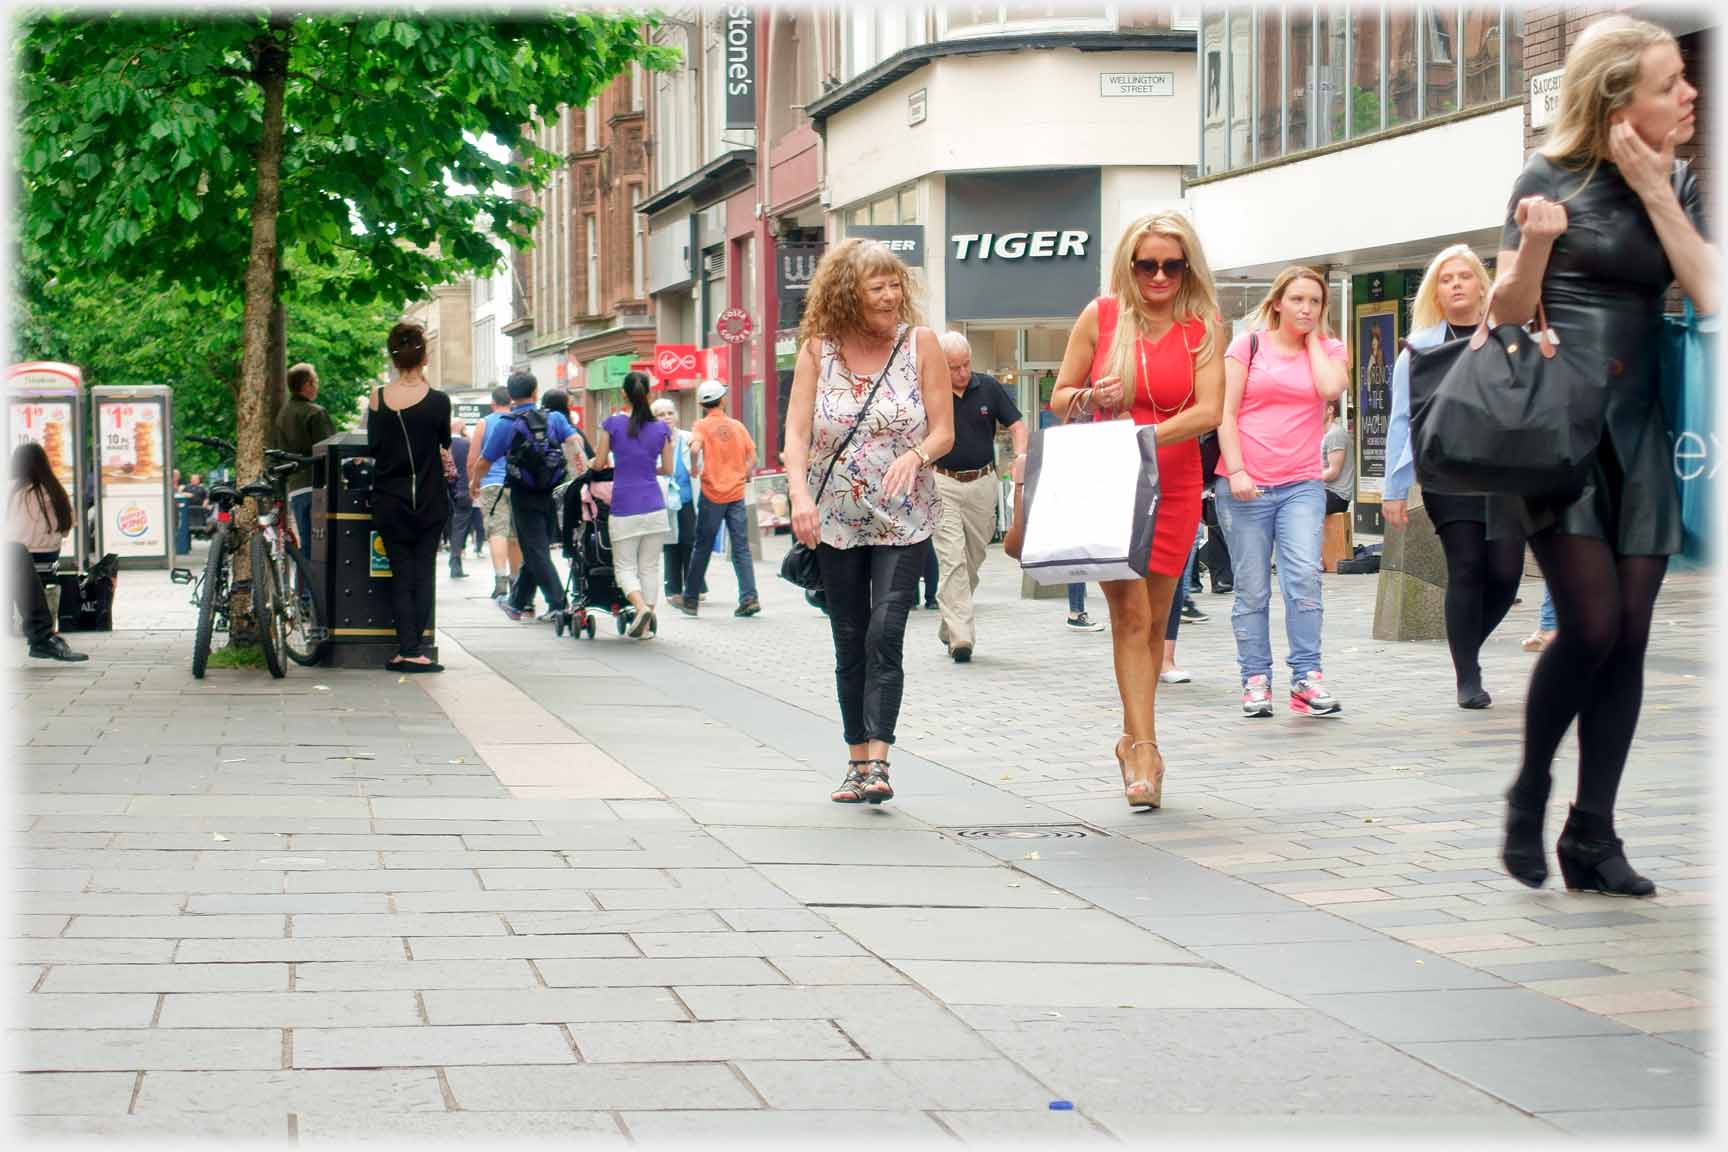 Women walking in pedestrianised street.